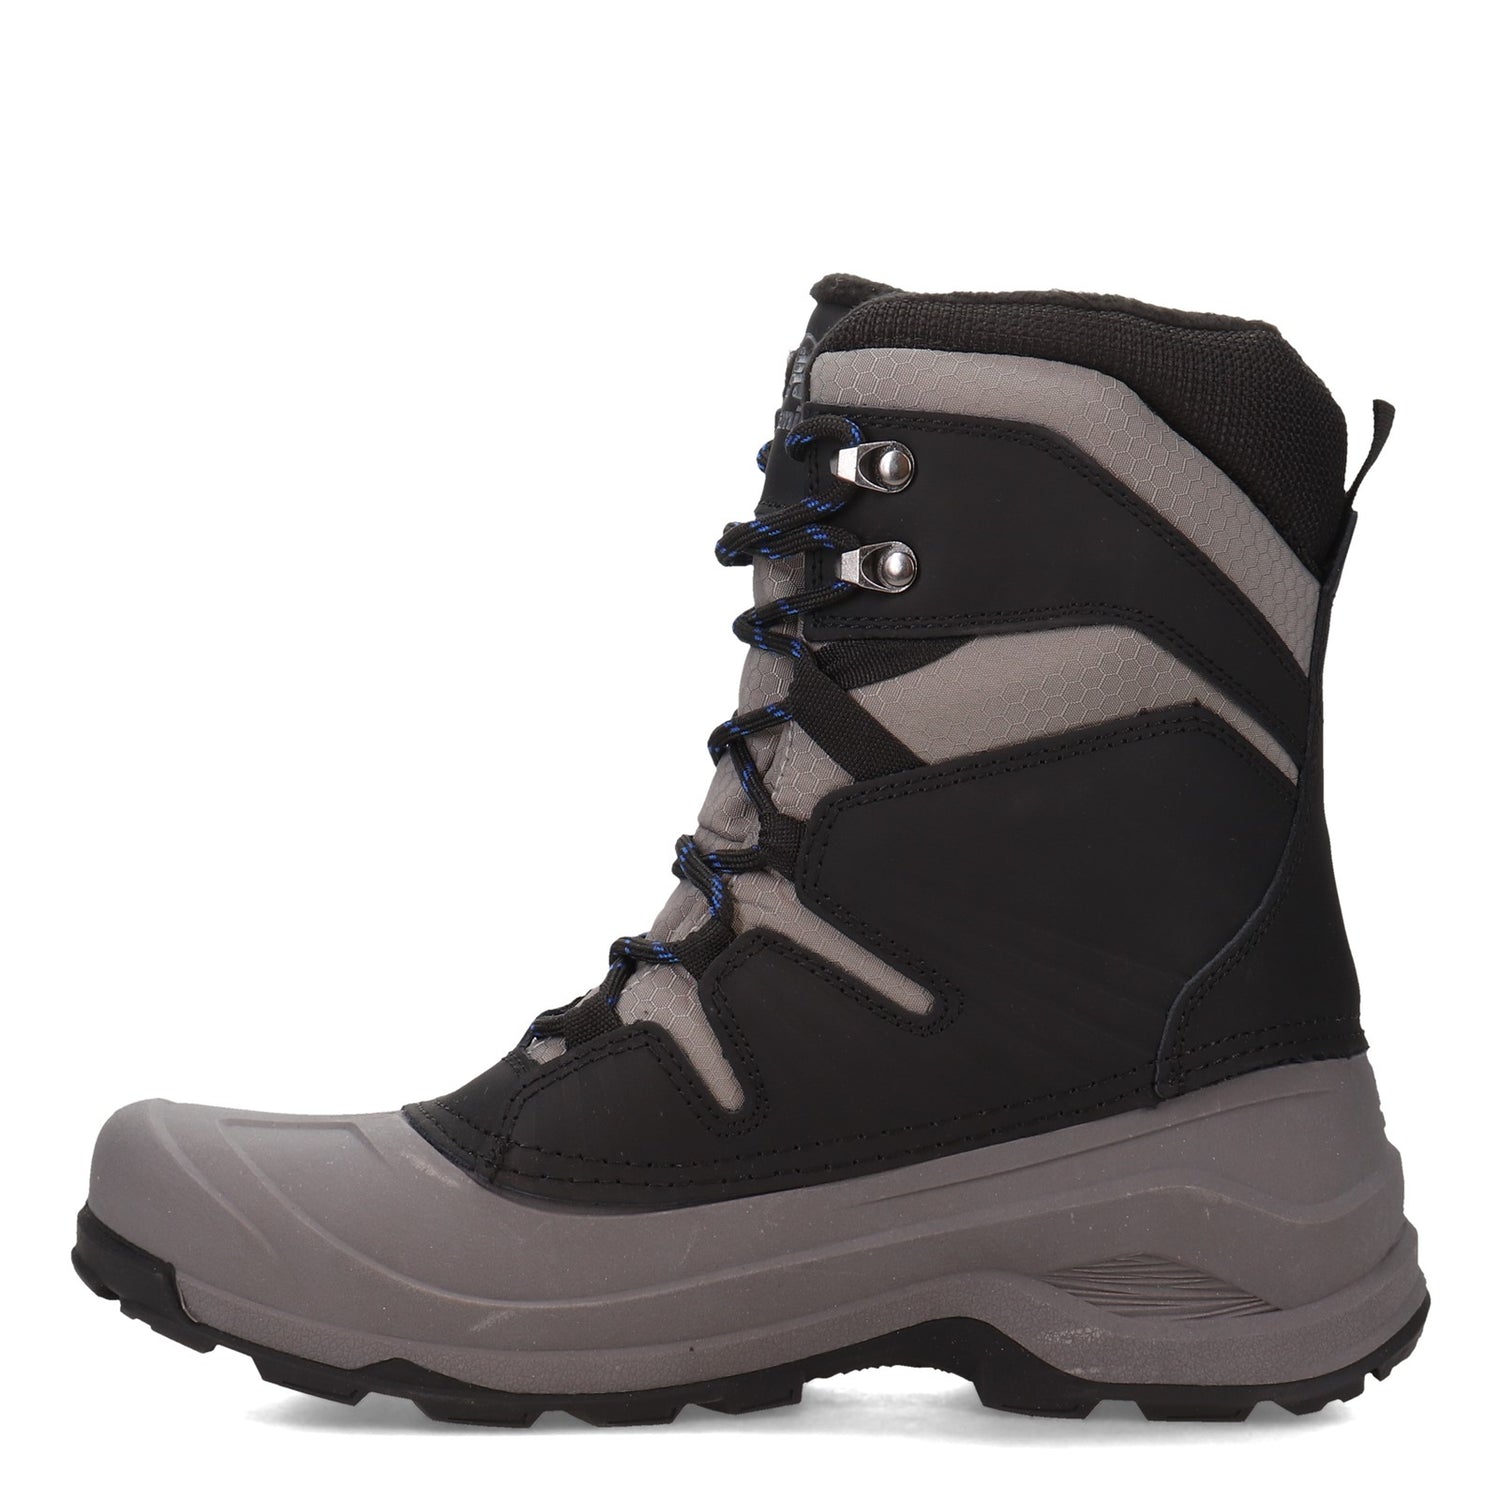 Peltz Shoes  Men's Kamik Iceland Snow Boot BLACK / CHARCOAL WK0354-BCH